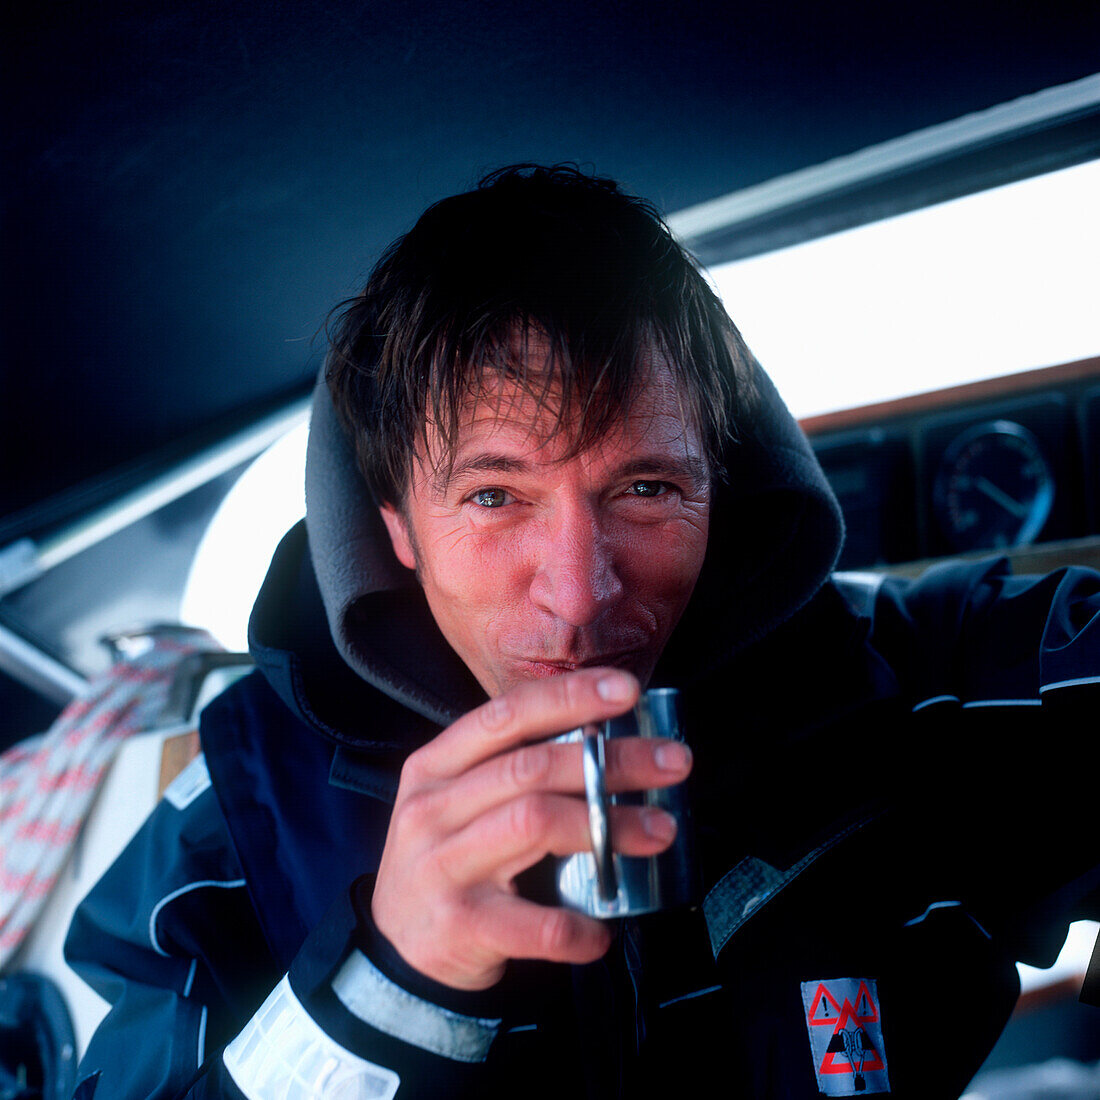 Mann auf einem Segelboot trinkt eine Tasse heißen Kaffee, Kieler Bucht zwischen Deutschland und Dänemark, Porträt